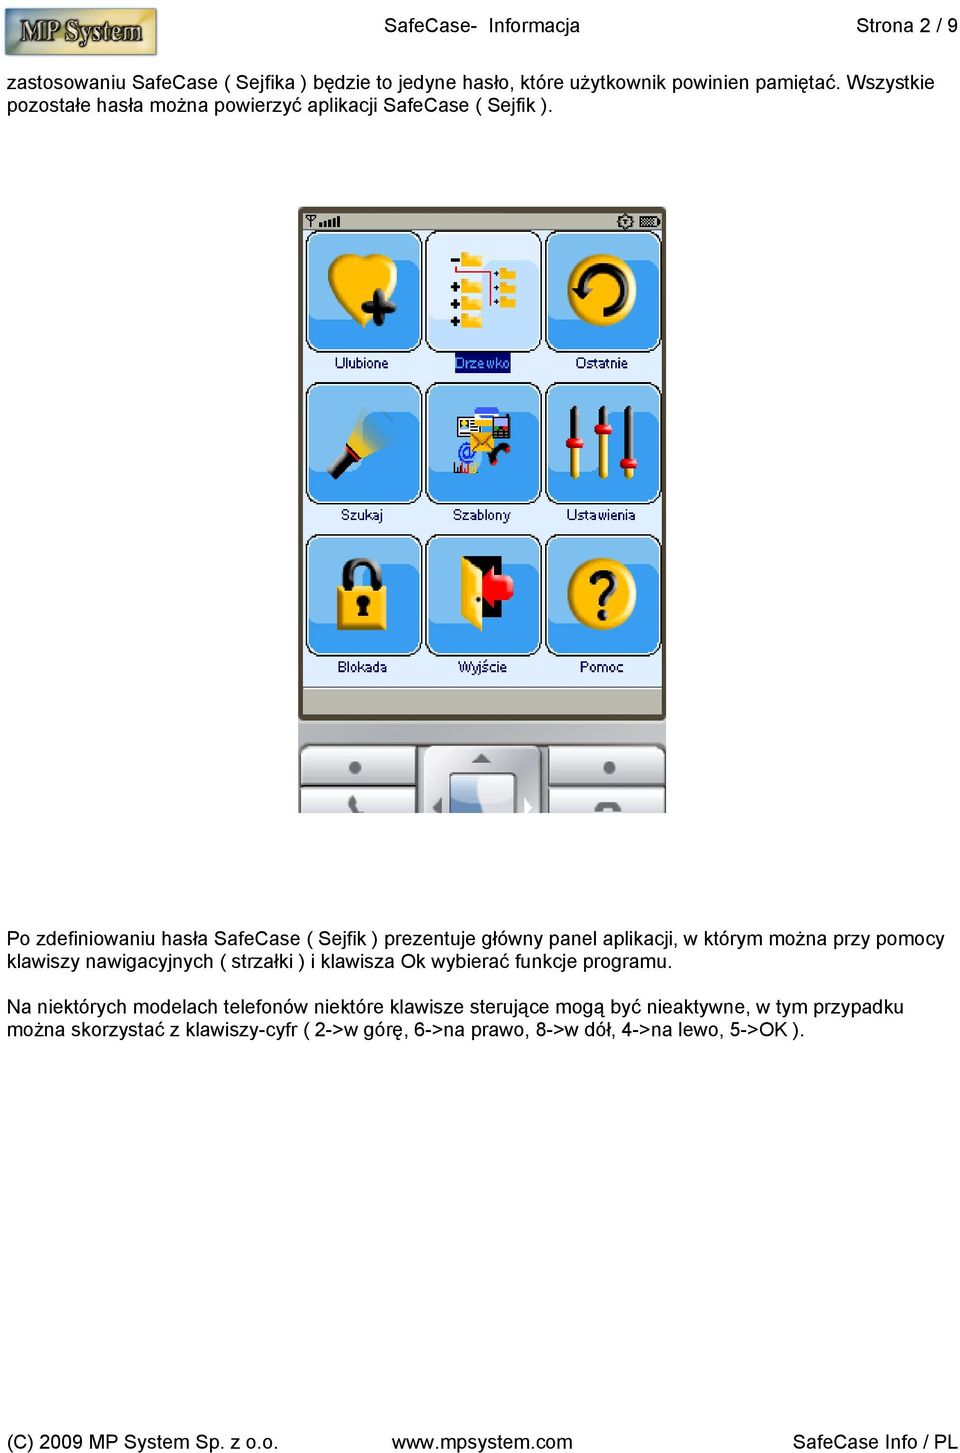 Po zdefiniowaniu hasła SafeCase ( Sejfik ) prezentuje główny panel aplikacji, w którym można przy pomocy klawiszy nawigacyjnych ( strzałki ) i